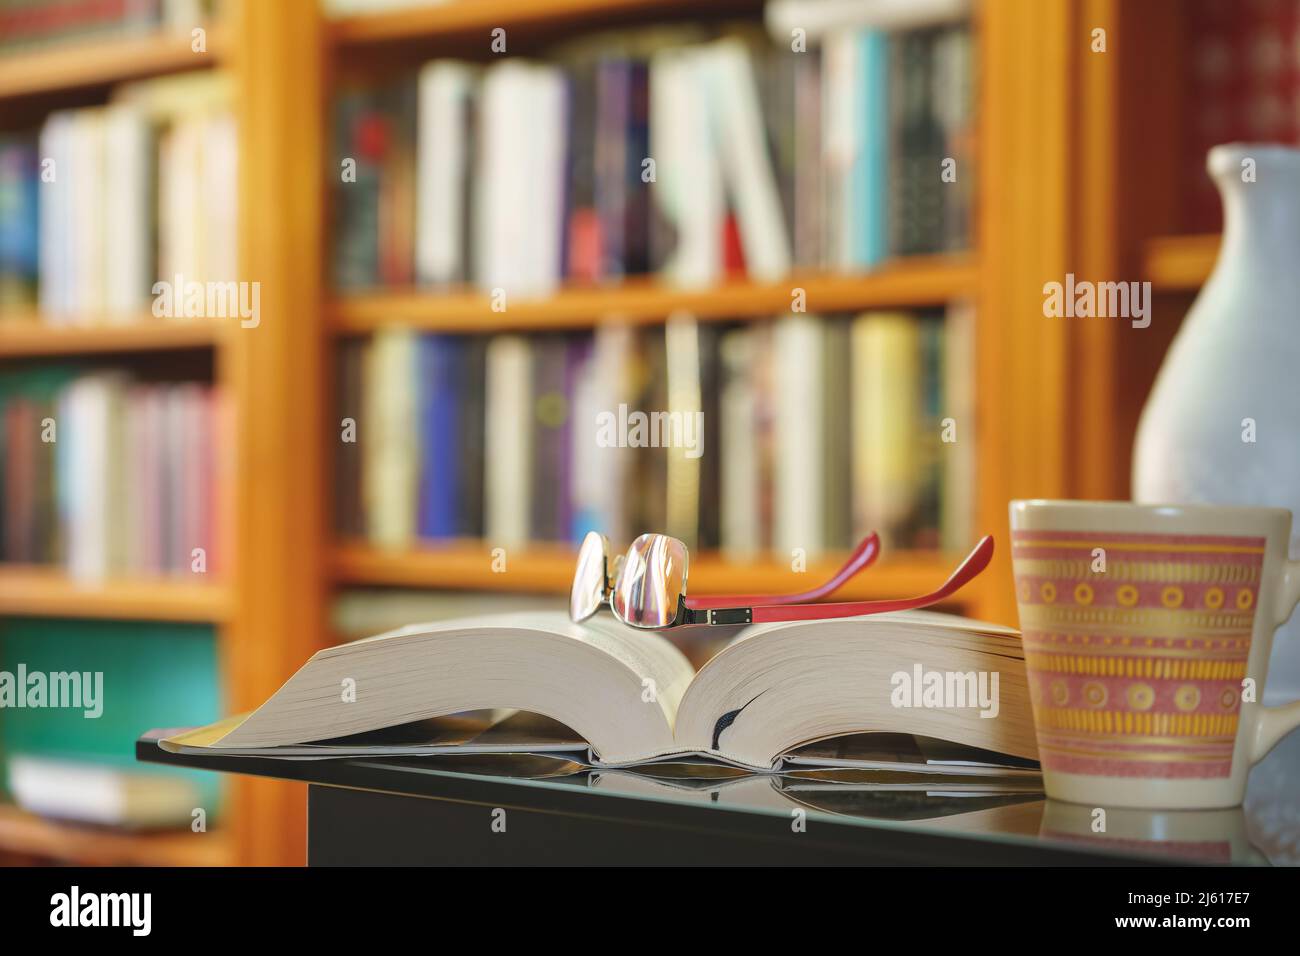 Bibliothek mit vielen Büchern zum Lesen, auf Regalen angeordnet. Öffnen Sie Buch, Gläser und Tasse Nahaufnahme. Speicherplatz kopieren. Hintergrund. Stockfoto